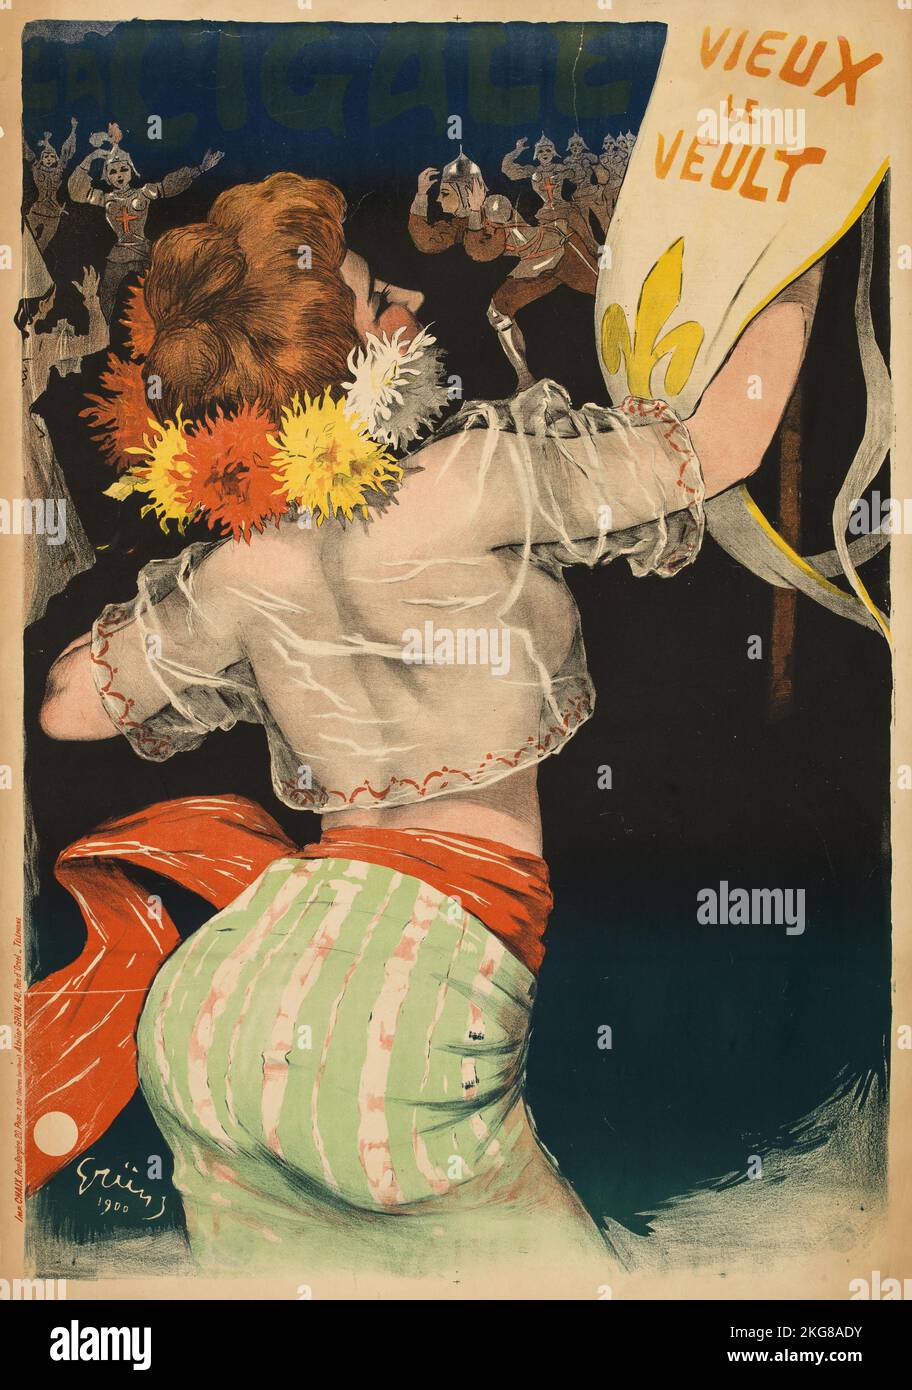 La cigale - Vieux Le Veult - Vintage poster by Jules Grün 1900 Stock Photo